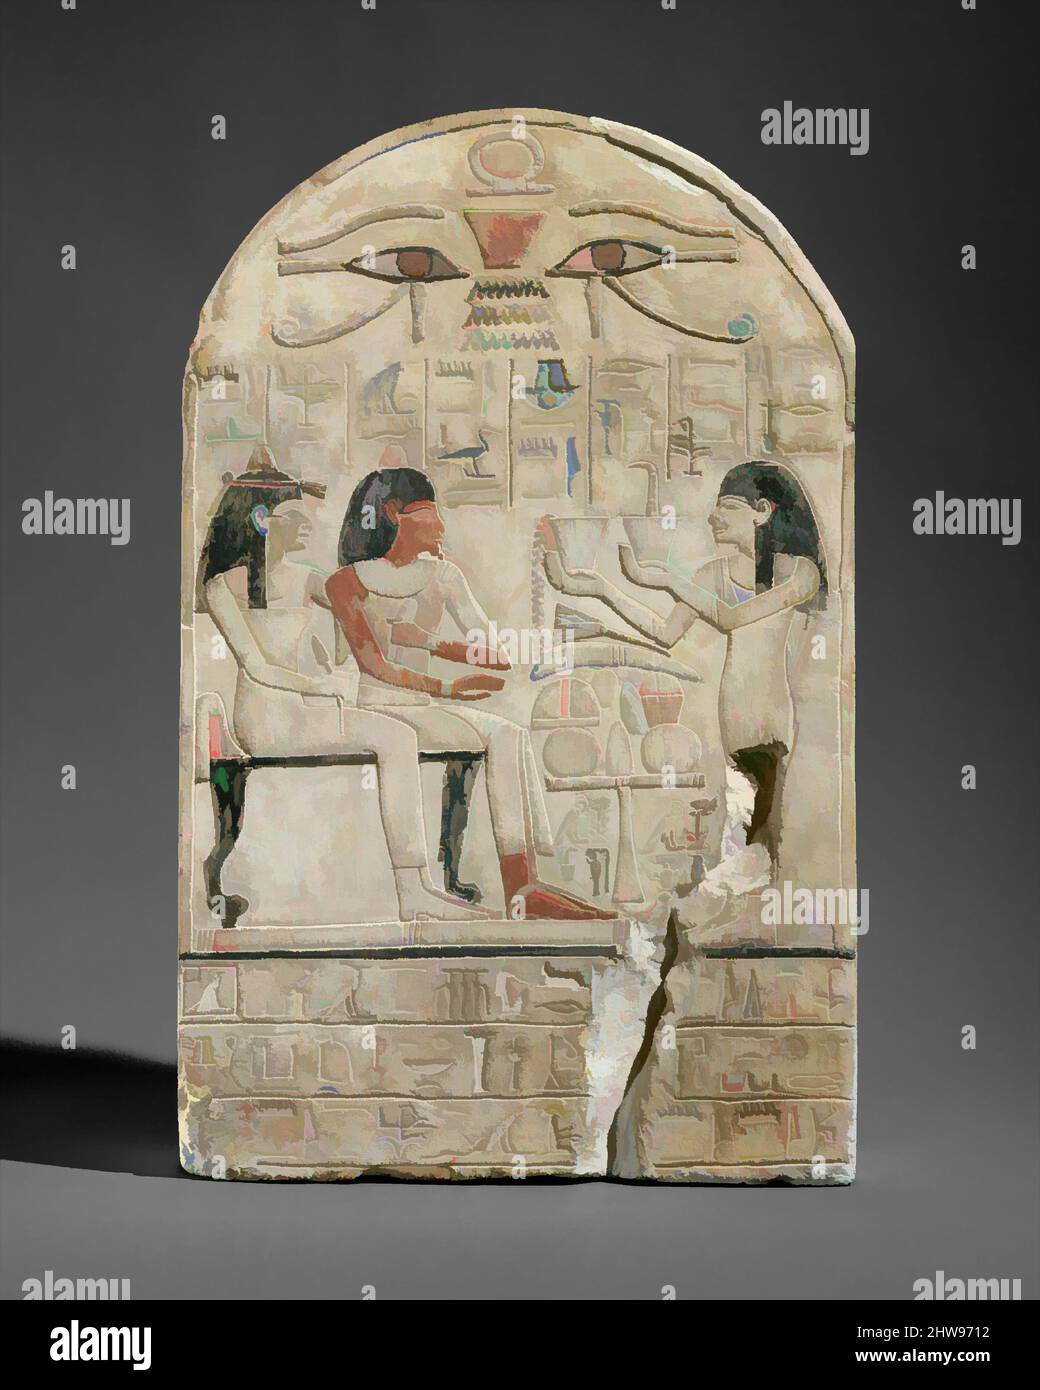 Arte ispirata da Stela del prete lettore di Amun Siamun e sua madre il cantante Amenhotep, New Kingdom, Dinastia 18, ca. 1420 a.C., dall'Egitto, calcare, vernice, H. 32,5 cm (12 13/16 in.); W. 20,5 cm (8 1/16 in.), questa stela raffigura il sacerdote-lettore Siamun e sua madre, le opere classiche modernizzate da Artotop con un tuffo di modernità. Forme, colore e valore, impatto visivo accattivante sulle emozioni artistiche attraverso la libertà delle opere d'arte in modo contemporaneo. Un messaggio senza tempo che persegue una nuova direzione selvaggiamente creativa. Artisti che si rivolgono al supporto digitale e creano l'NFT Artotop Foto Stock